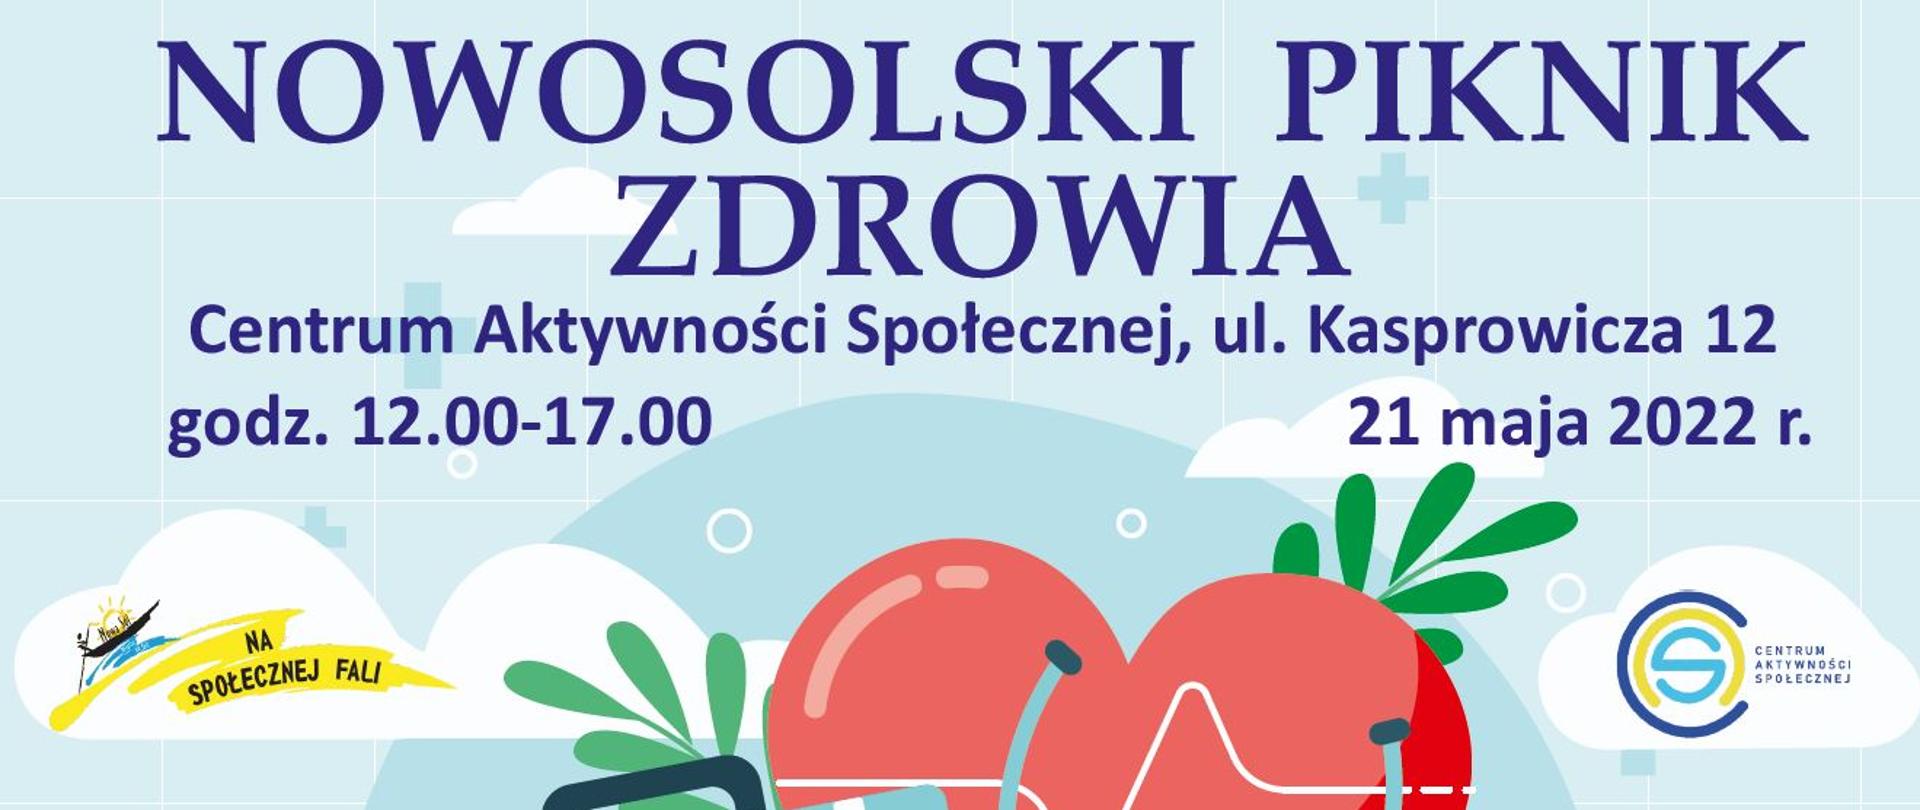 Nowosolski Piknik Zdrowia - CAS 21 maja 2022 r.